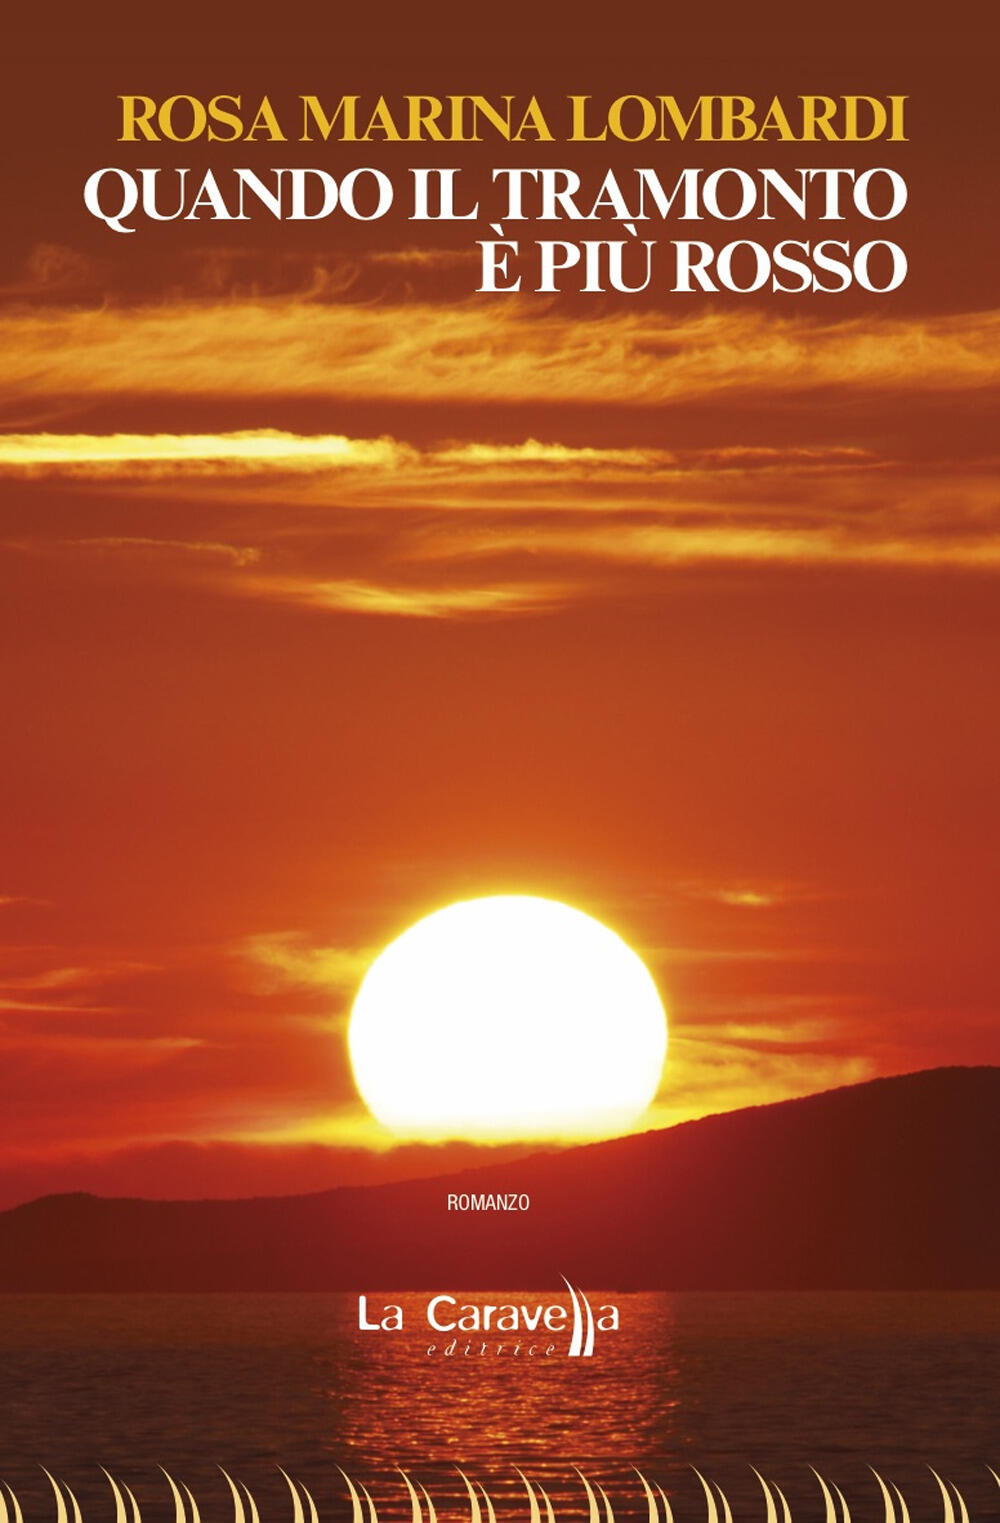 Quando il tramonto ¨ pi¹ rosso Rosa Marina Lombardi Libro La Caravella Editrice Il mare